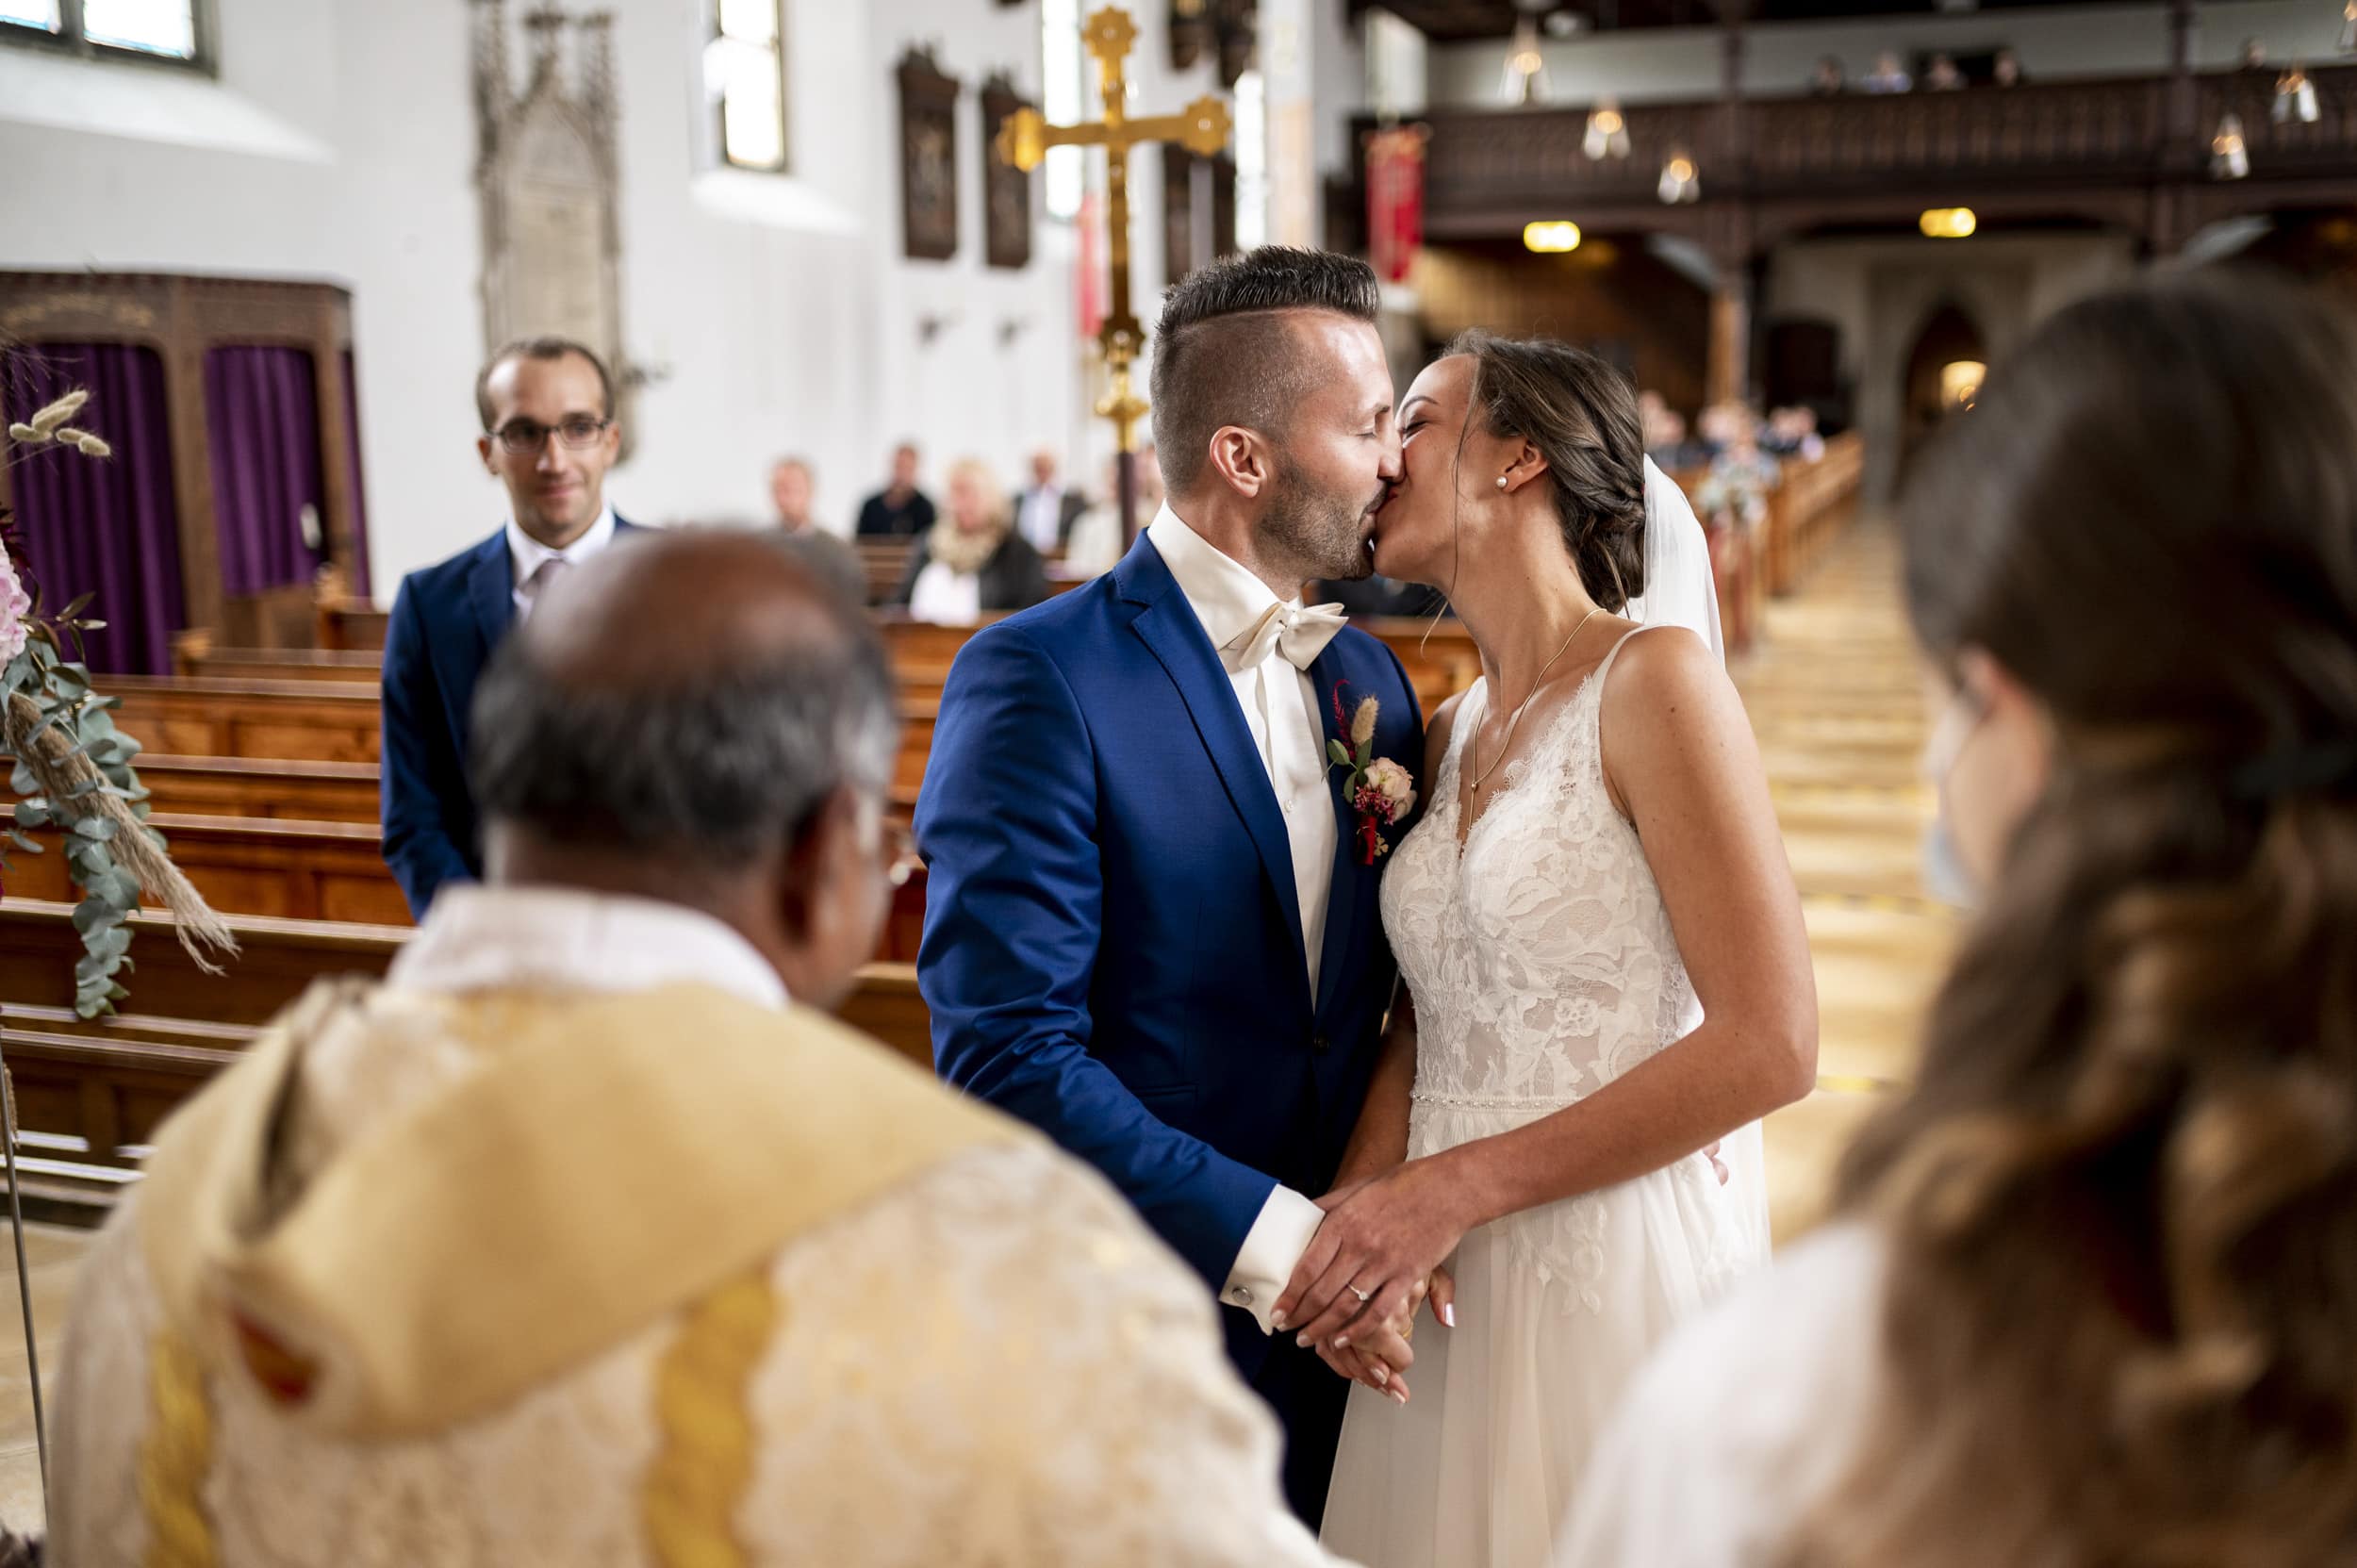 Das Hochzeitspaar küsst sich glücklich nach dem JA-Wort und Ringe Anstecken in der Kirche in Aindling.